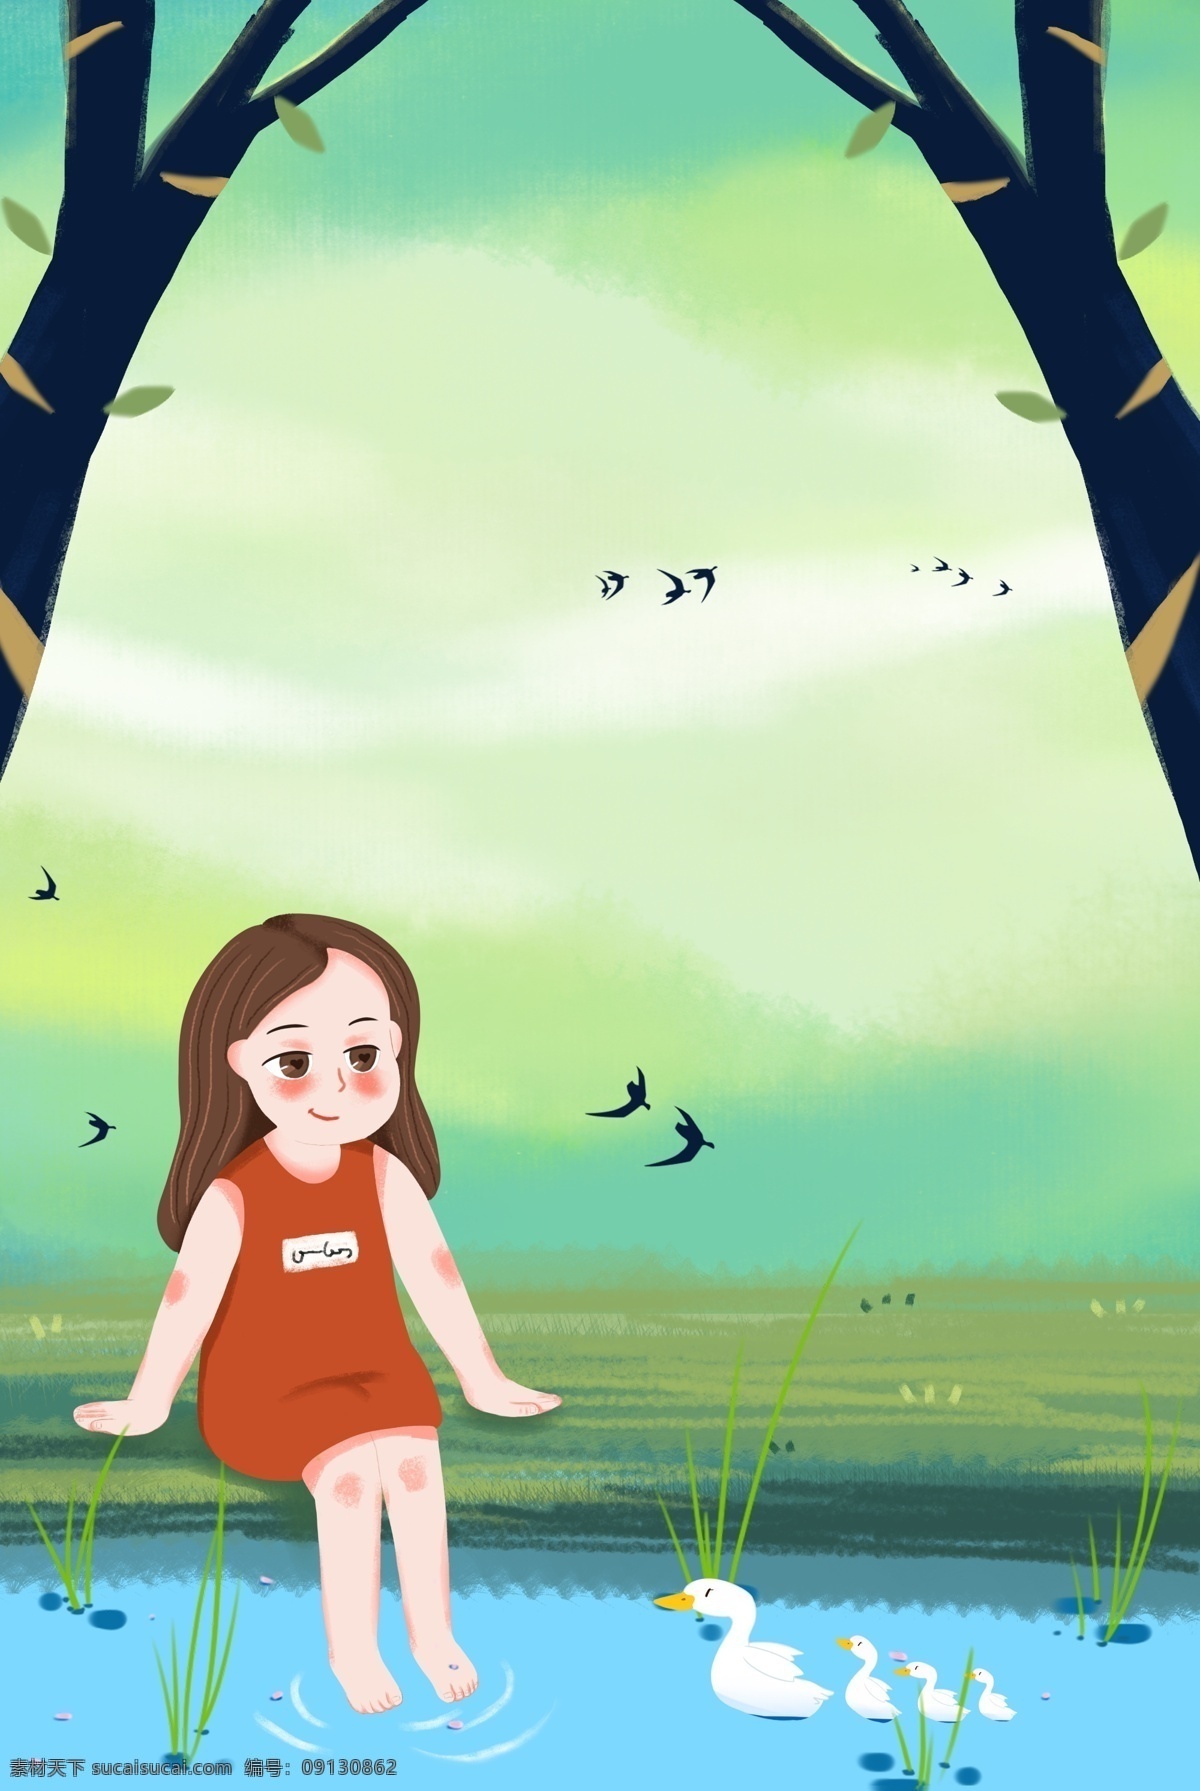 清新 可爱 女孩 小 鸭子 卡通 背景 小鸭子 池塘 户外 郊游